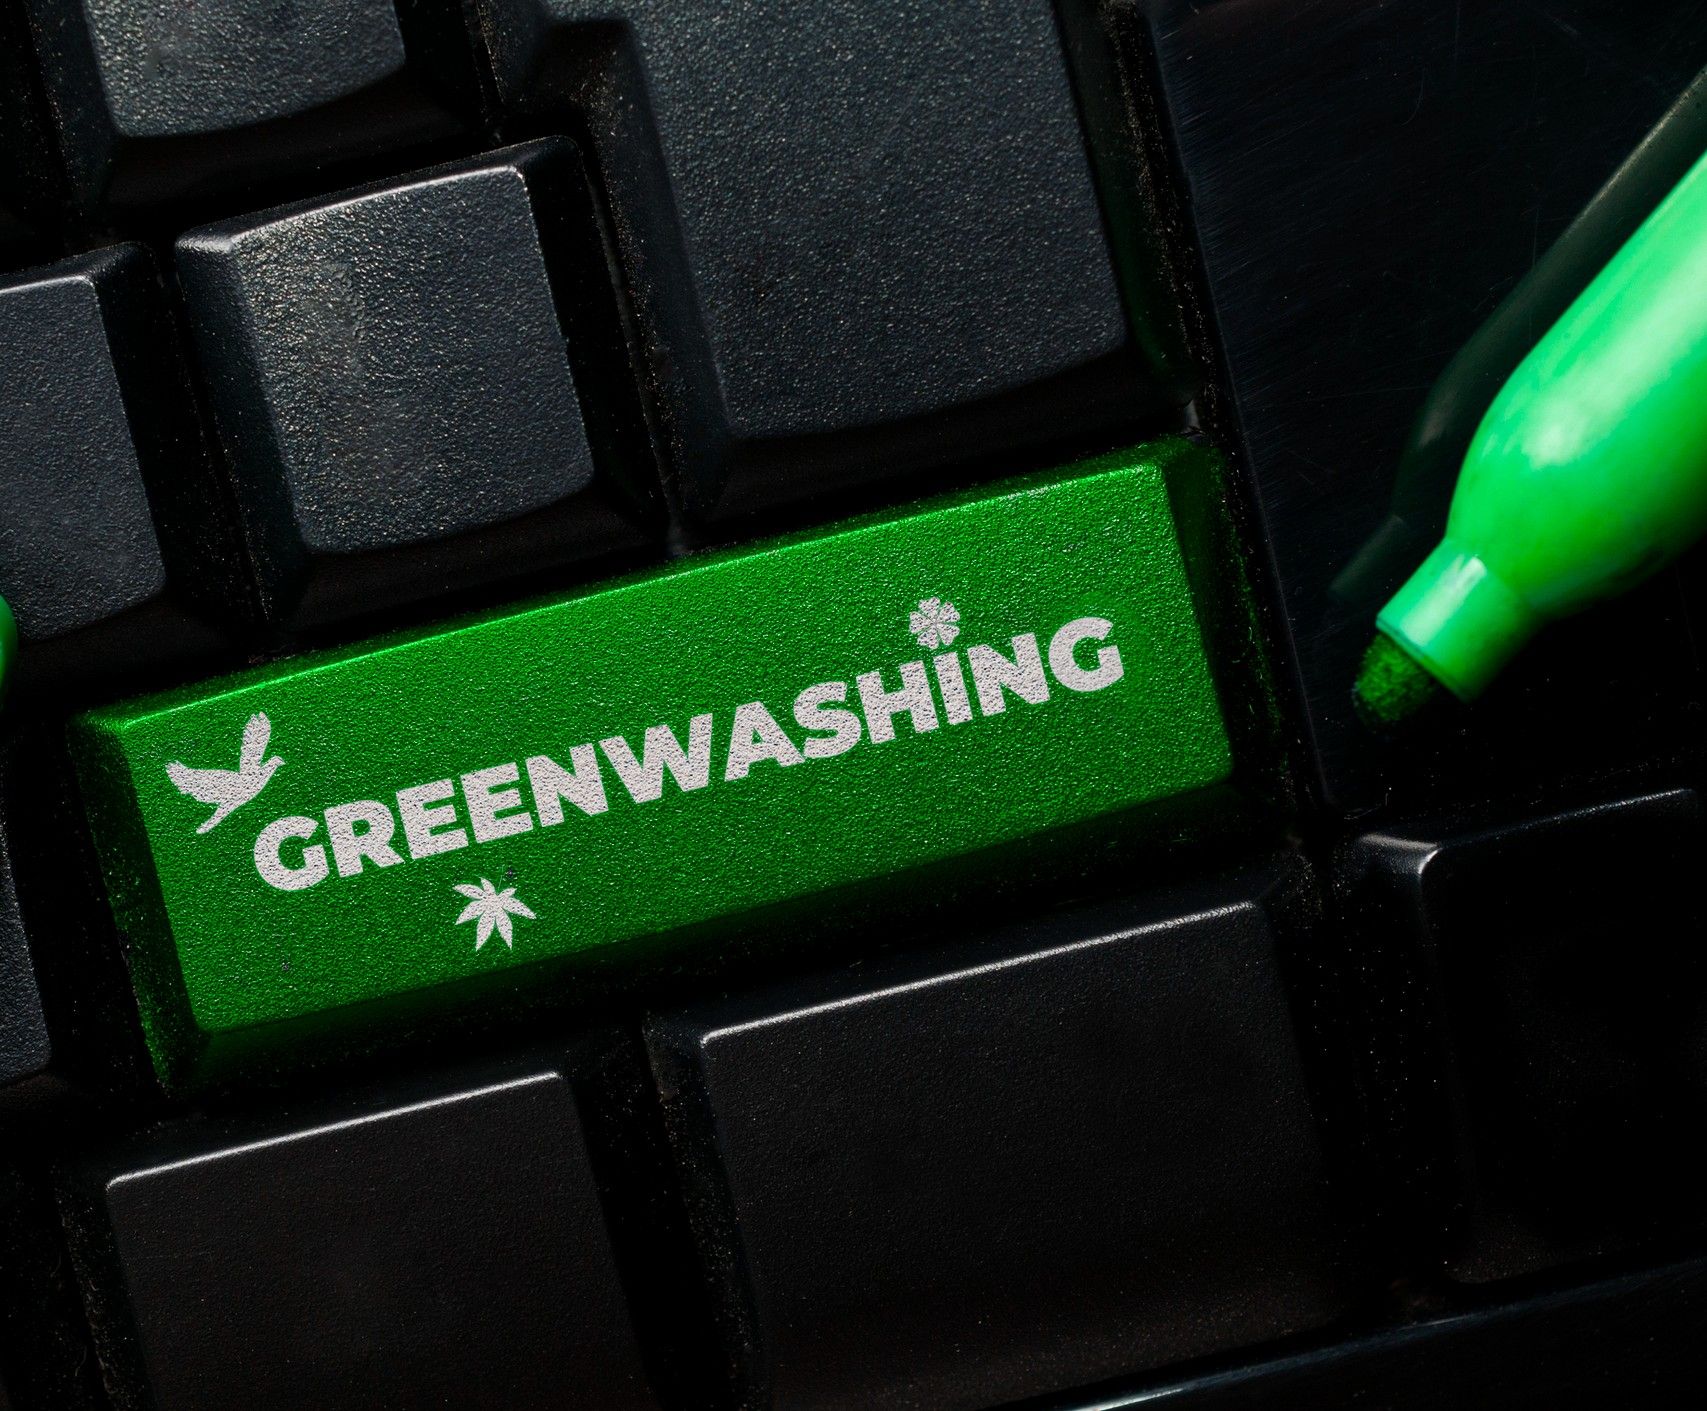 Forbrugerombudsmanden vil ikke længere bruge ordet greenwashing i pressemeddelelser efter kritik fra Salling Group. Foto: Getty Images